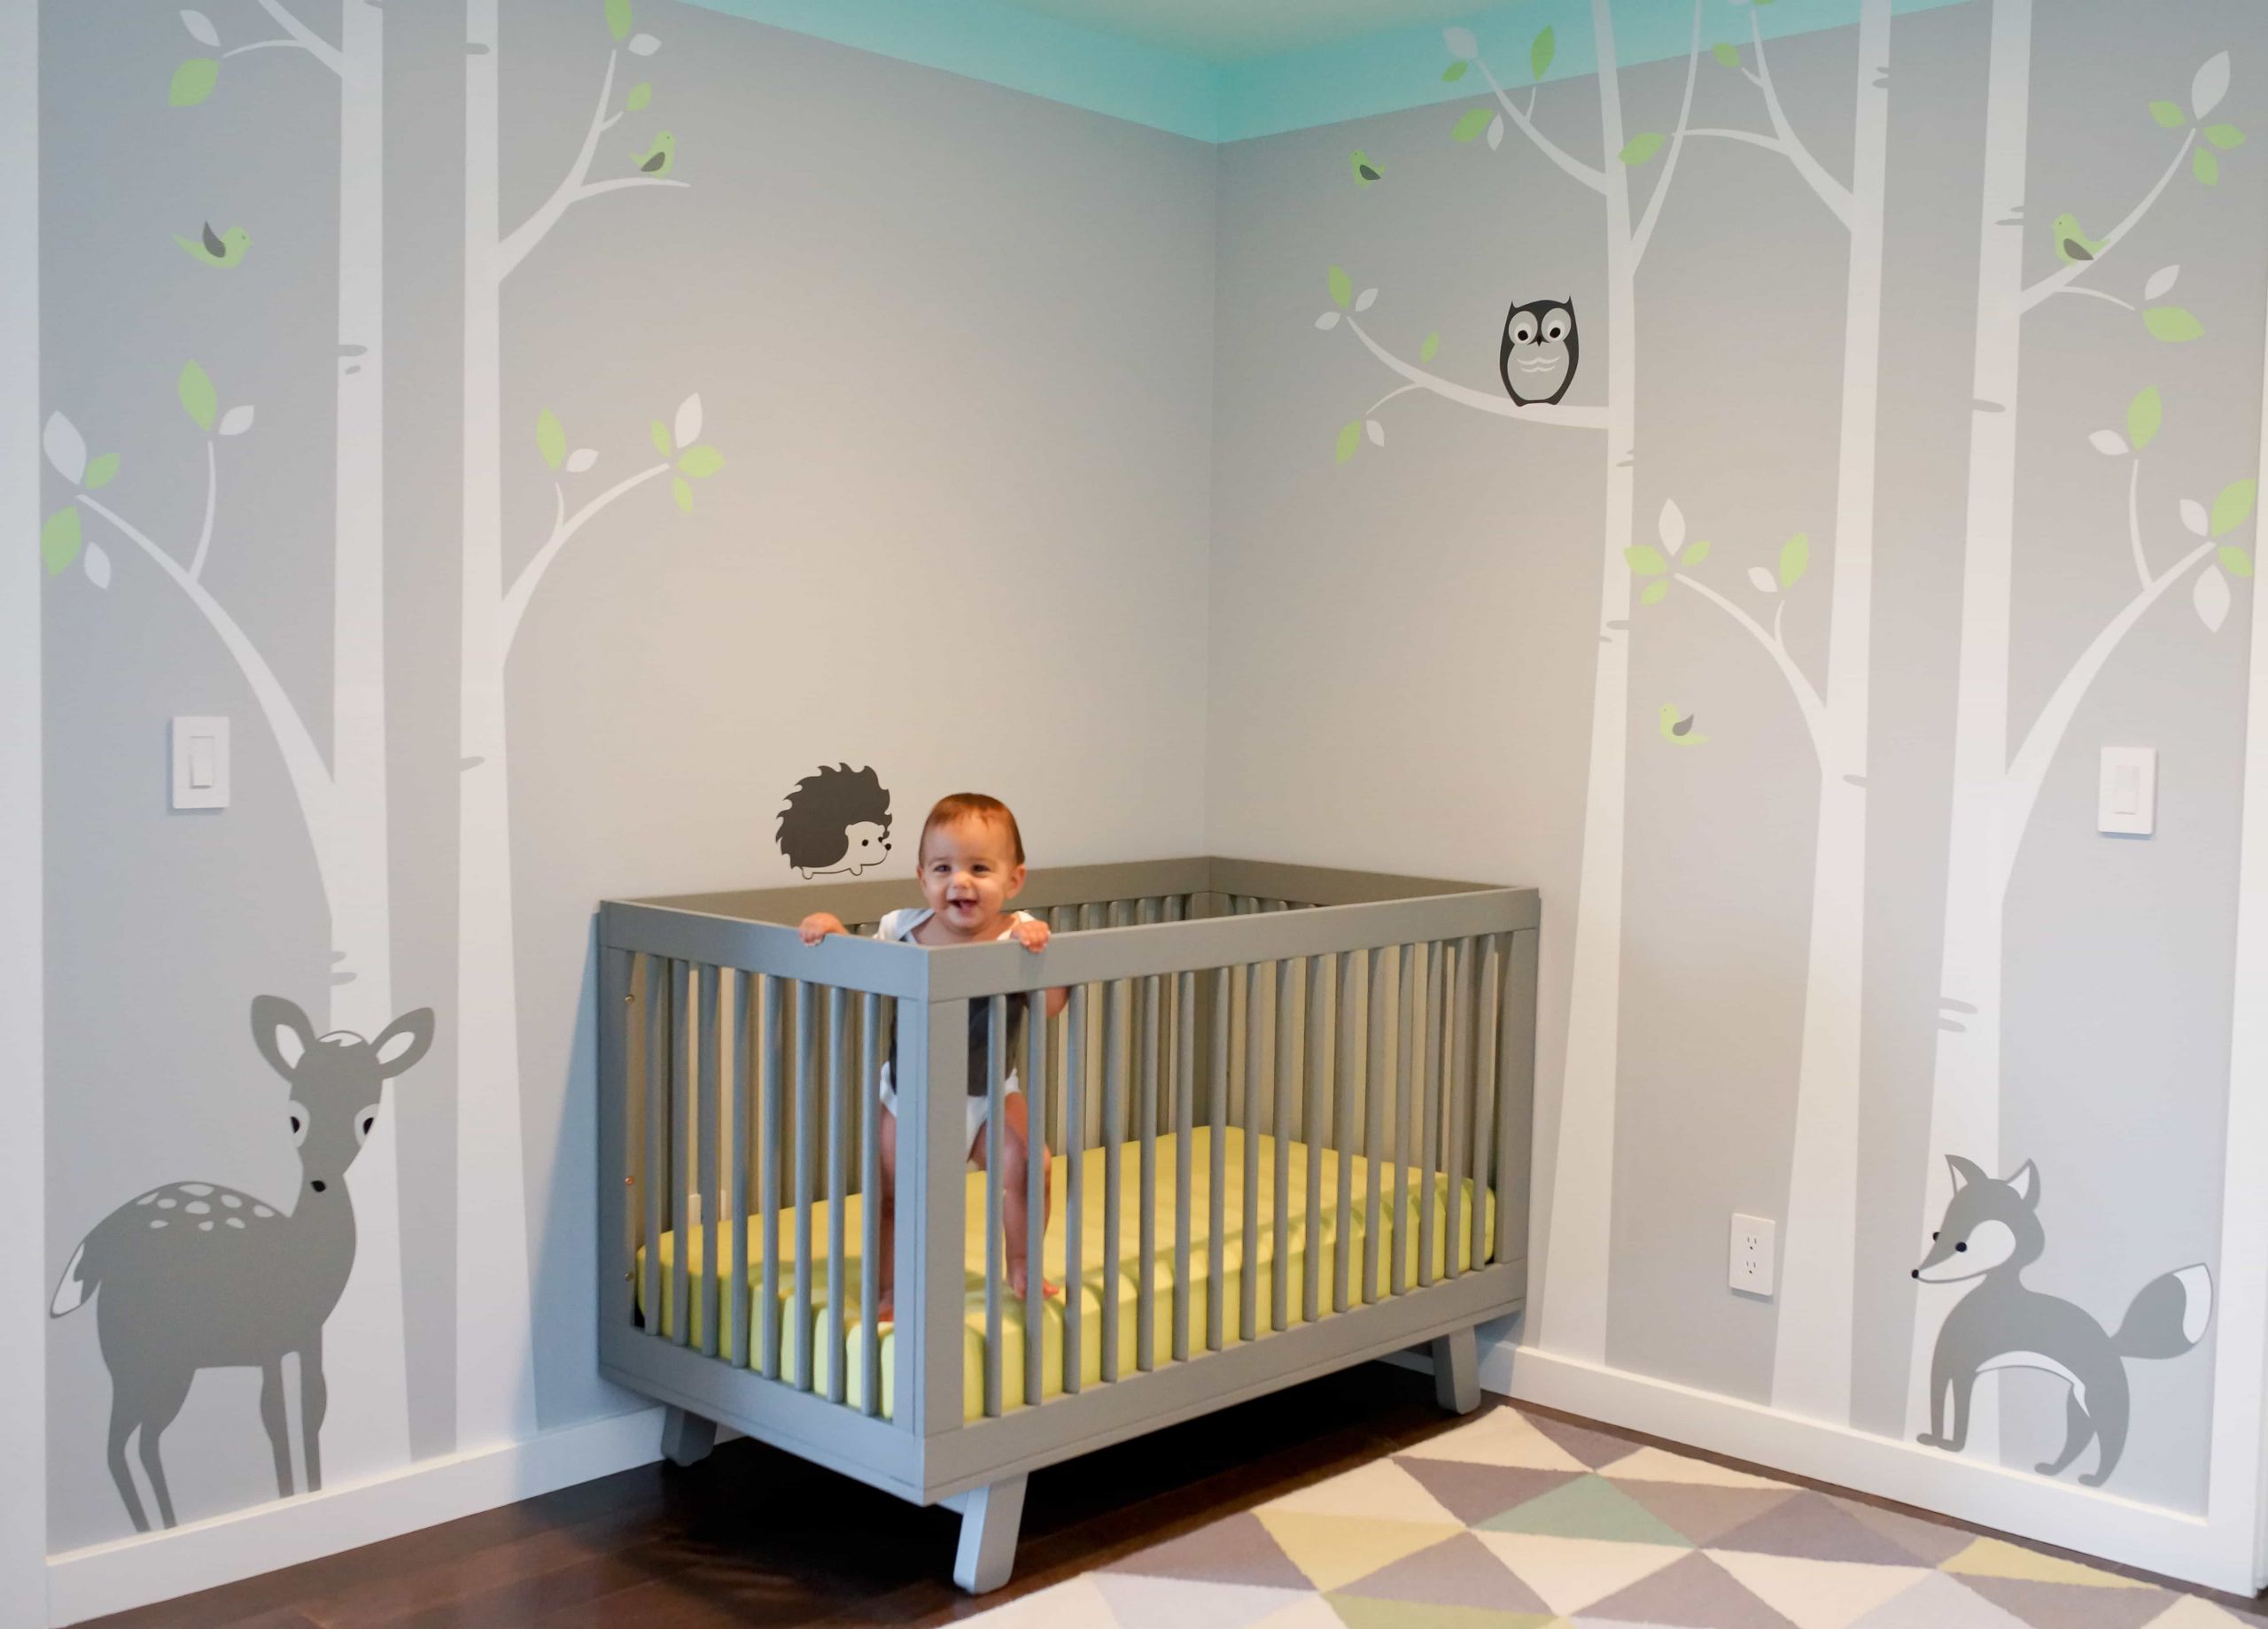 Baby Room Wall Decorating Ideas
 Minimalist Nursery Bedroom Furniture Design Ideas 5606